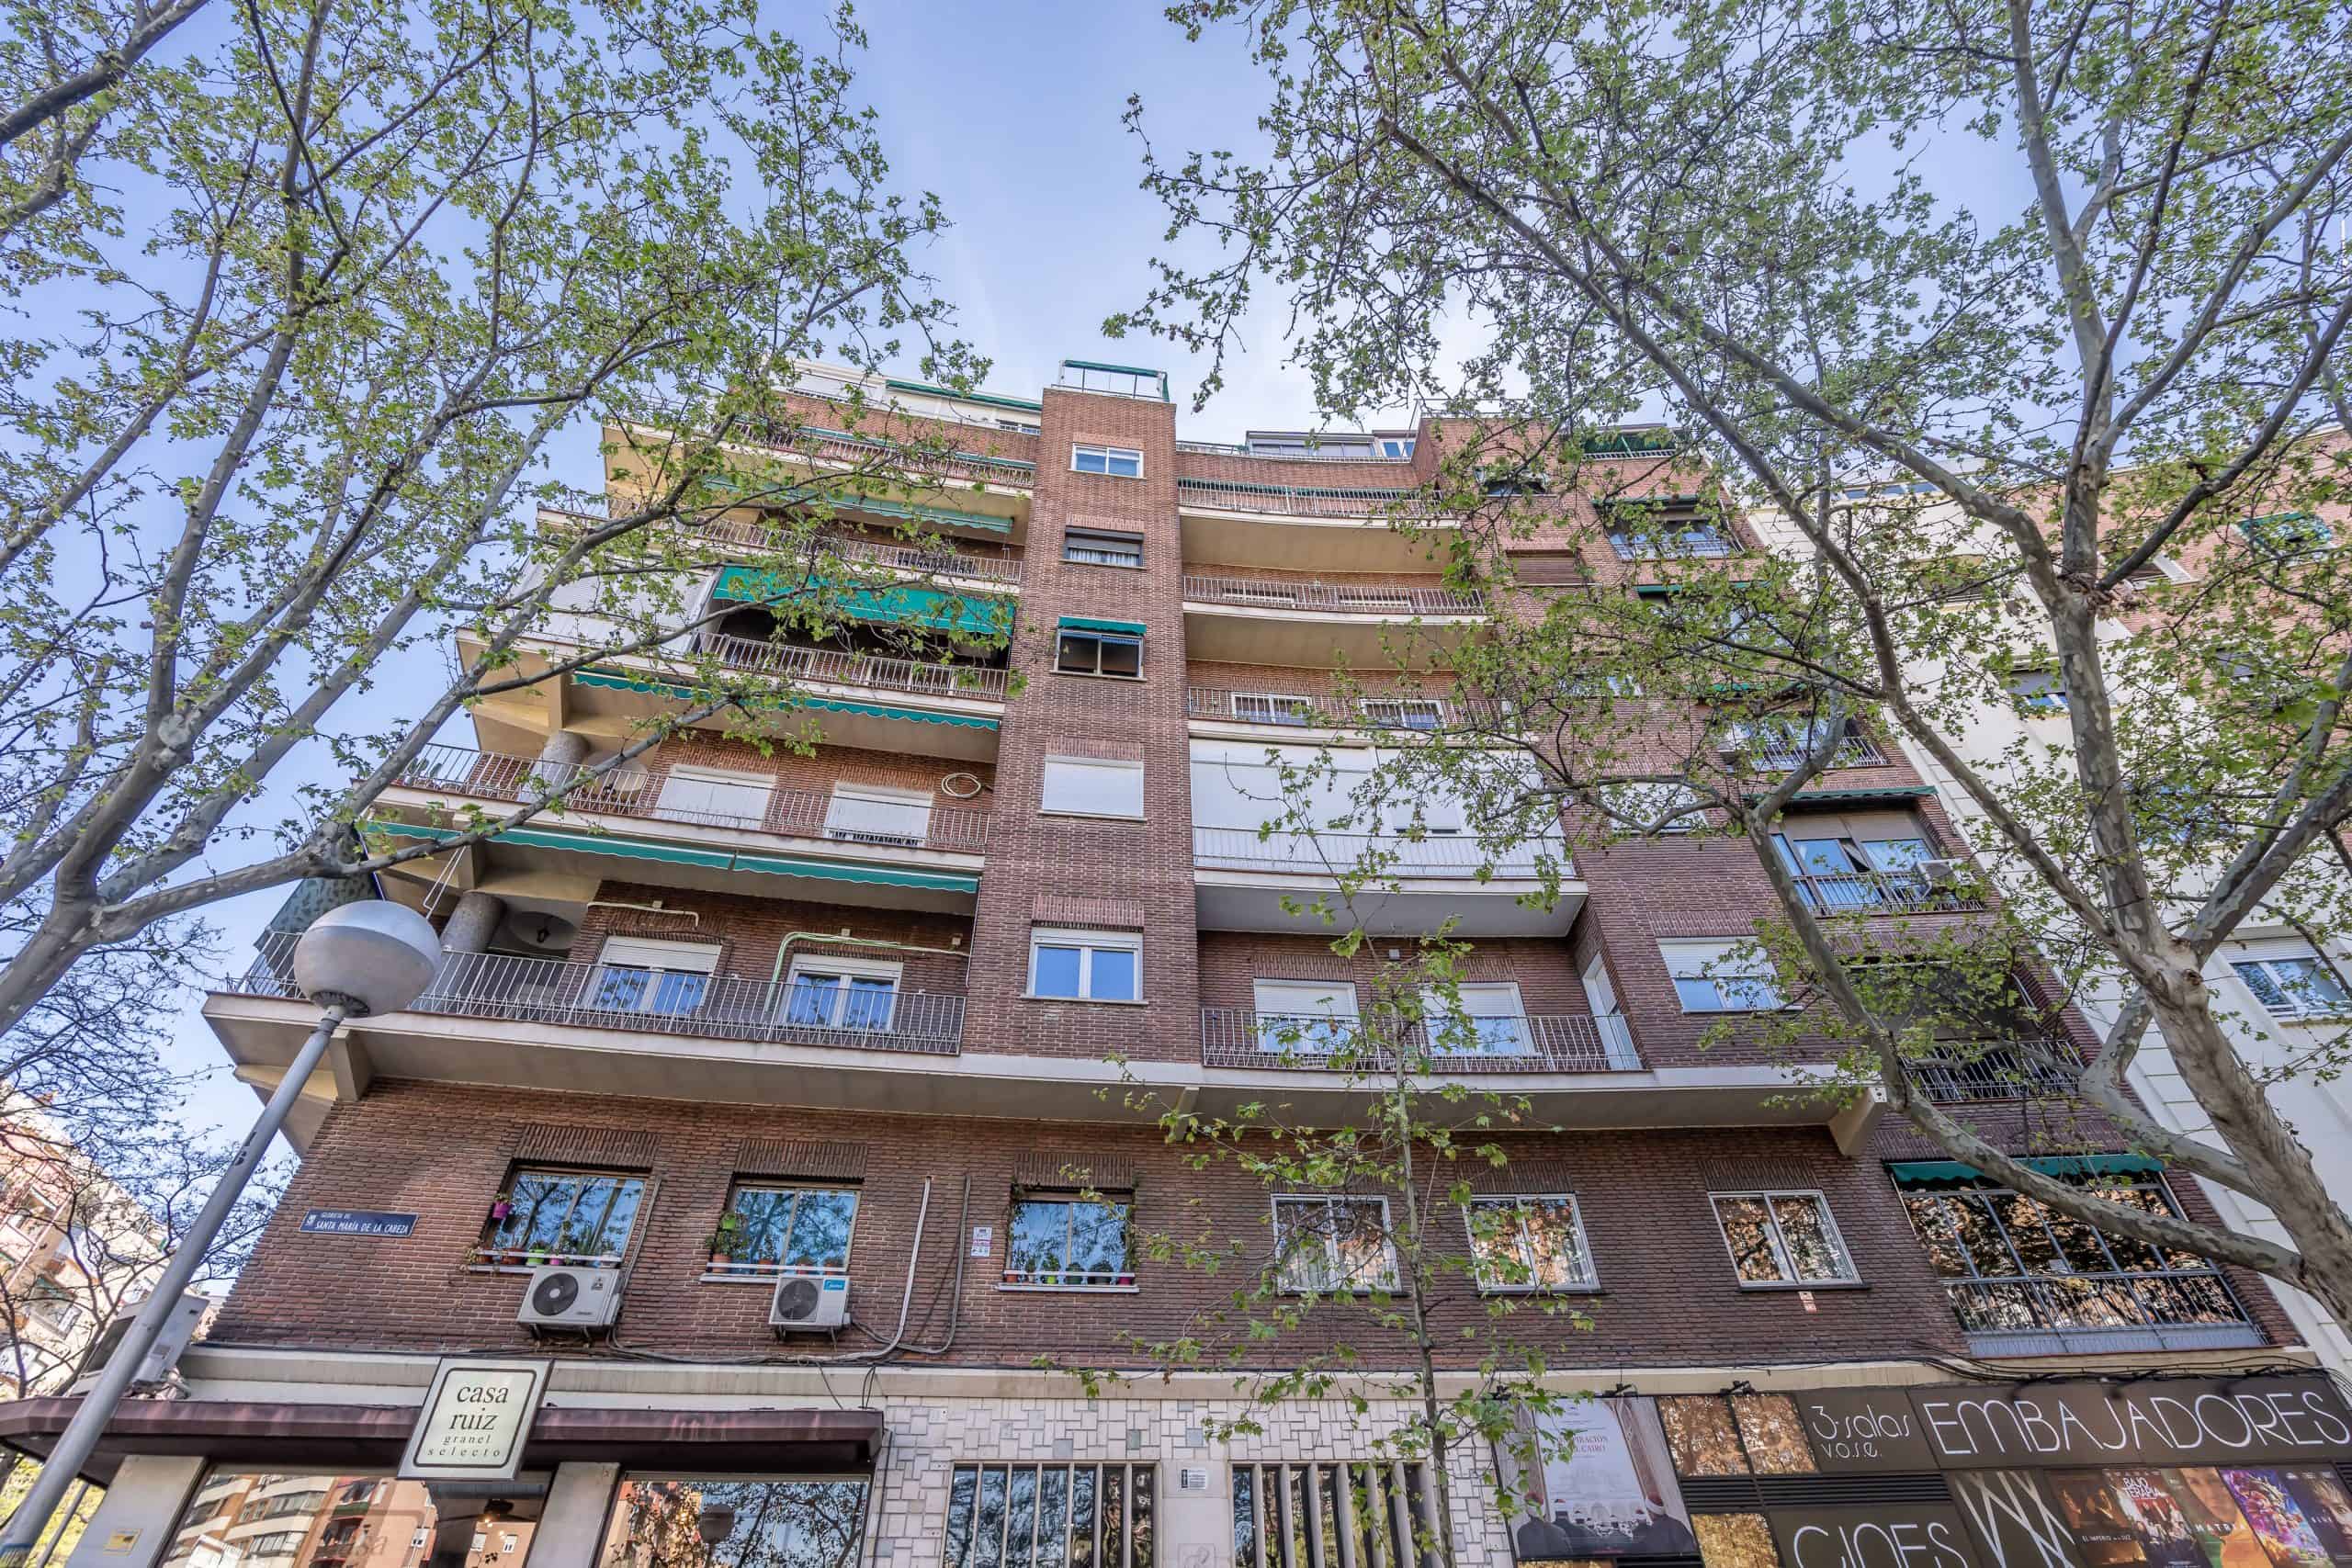 Agencia Inmobiliaria de Madrid-FUTUROCASA-Zona ARGANZUELA-EMBAJADORES-LEGAZPI Santa María de la Cabeza-FACHADA